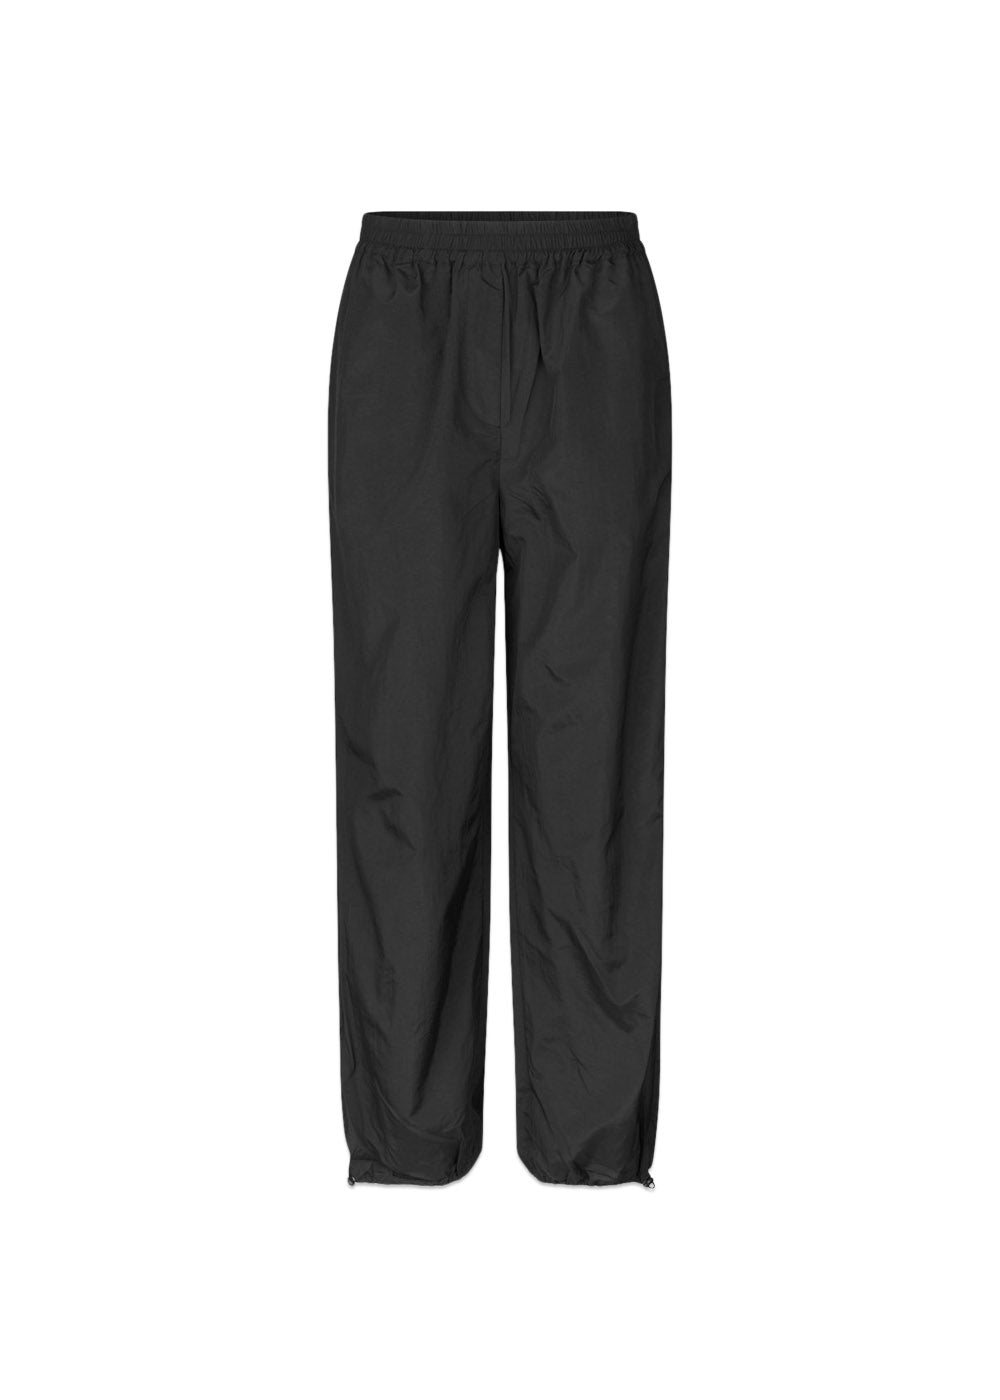 Modströms FumikoMD pants - Black. Køb bukser her.